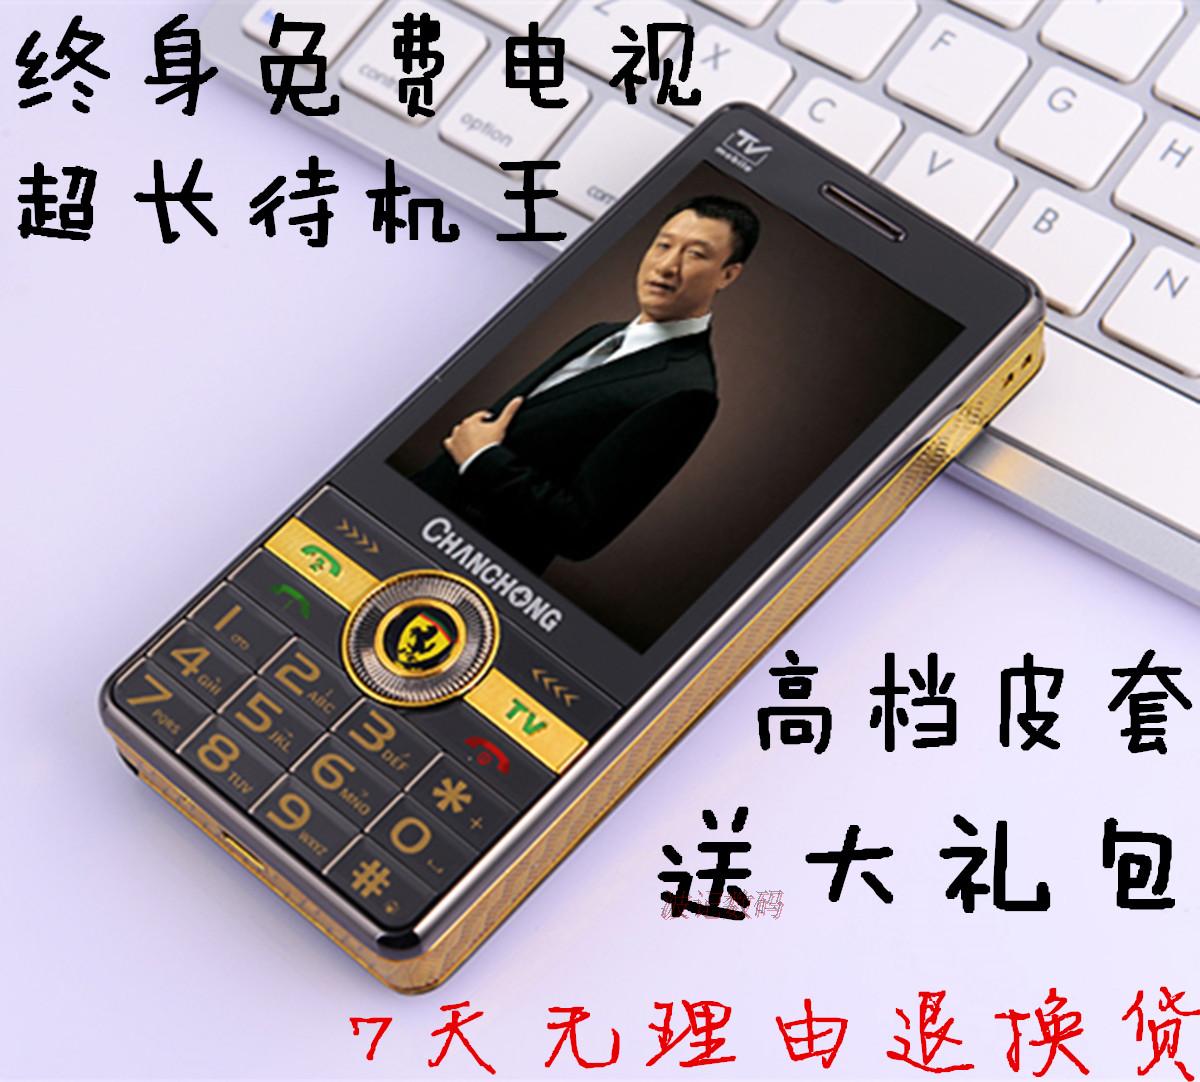 长虹智能手机虹Phone - 快懂百科